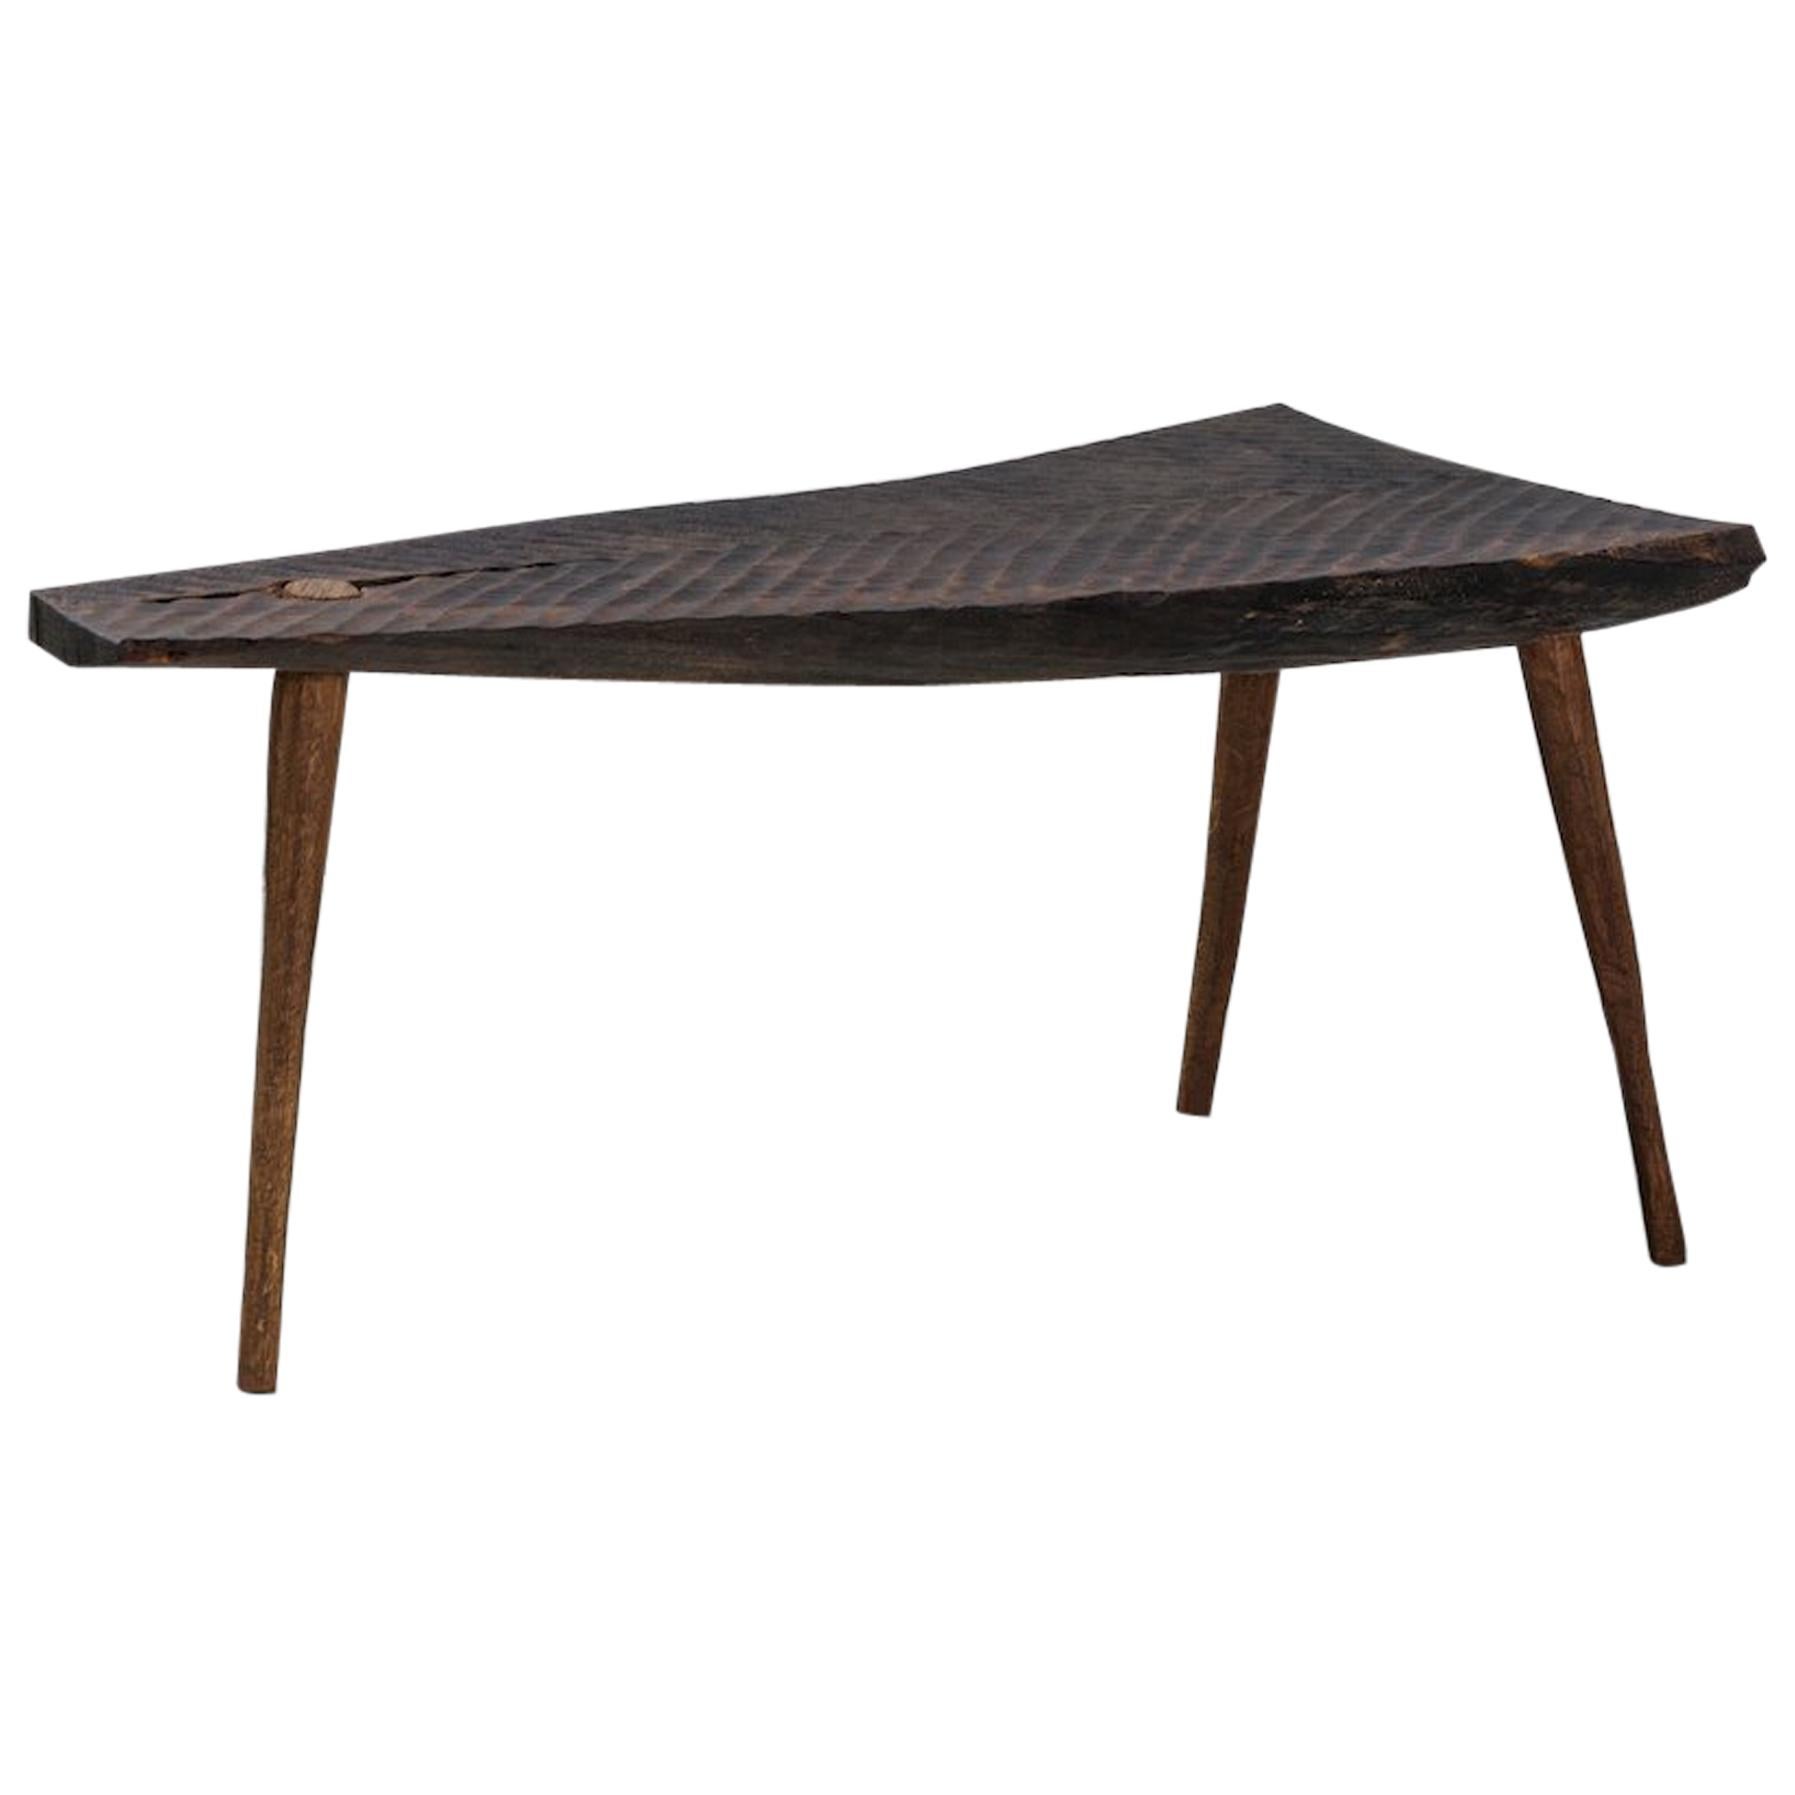 Petite table n°3 contemporaine de style brutaliste en chêne massif et huile de lin